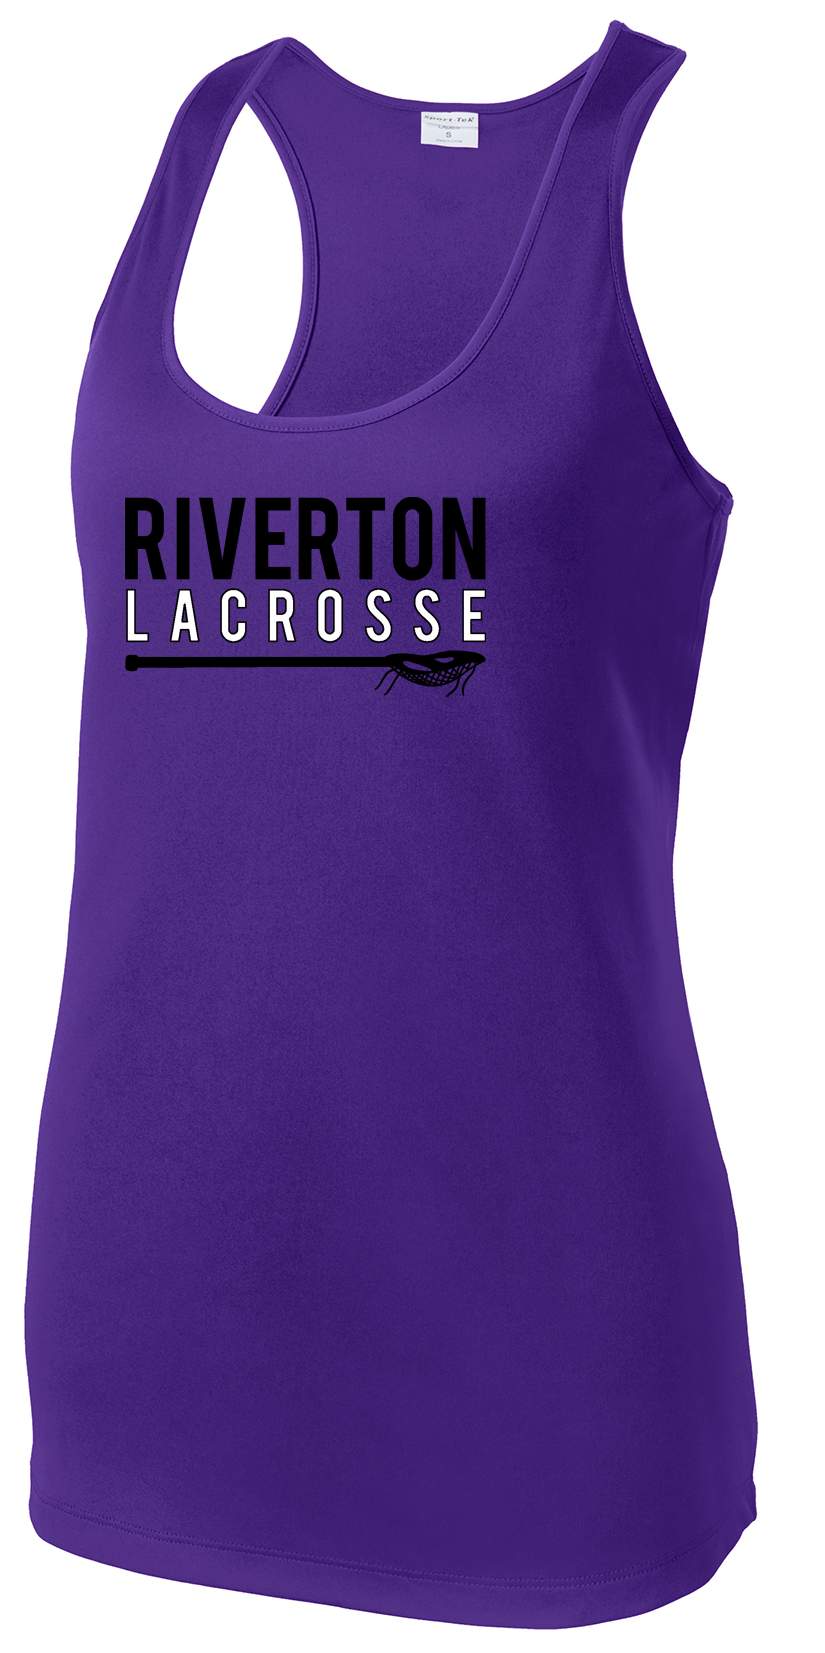 Riverton Lacrosse Women's Racerback Tank